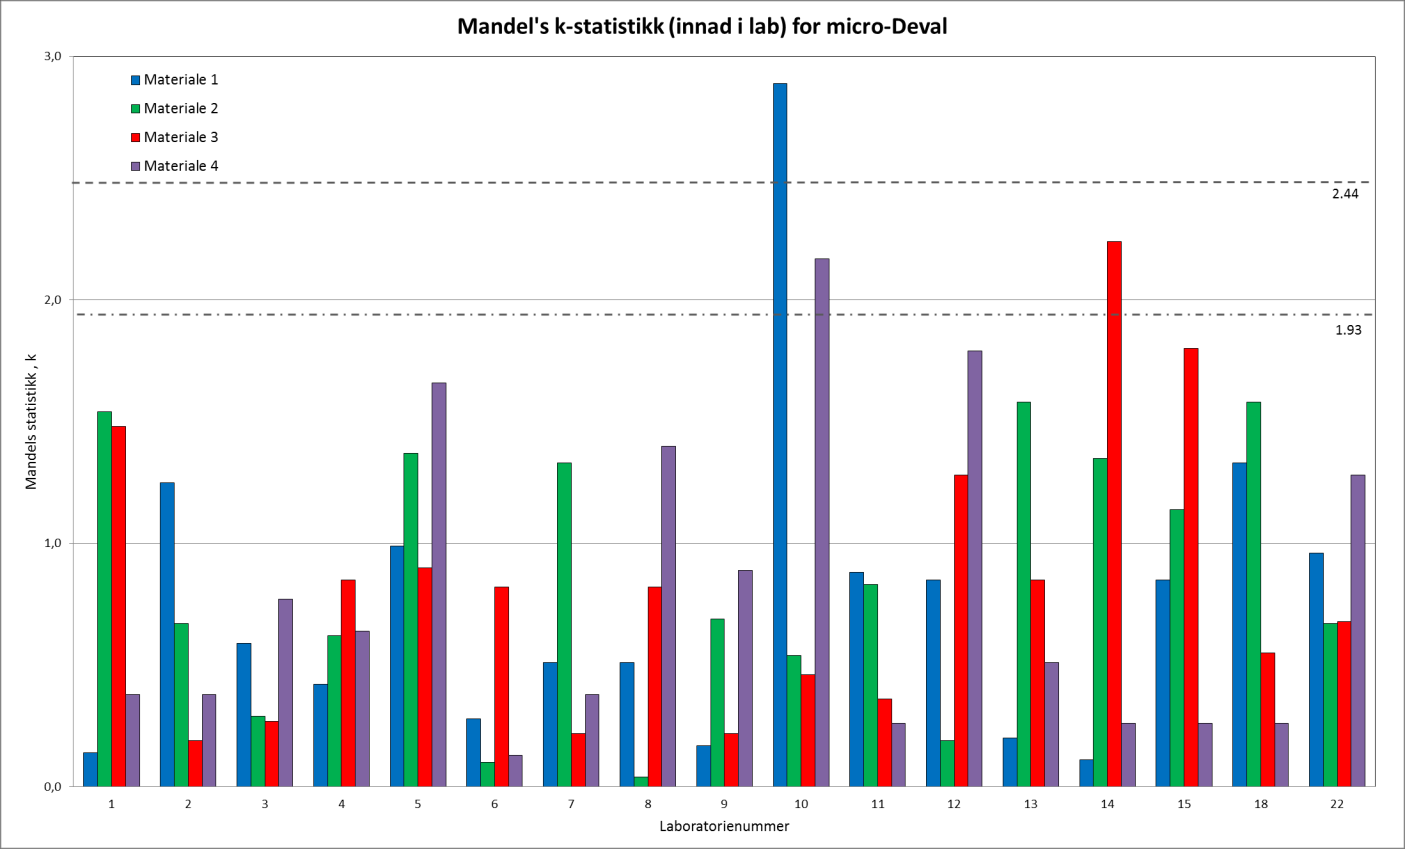 Figur 14. Mandels k-statistikk for micro-deval For micro-deval finnes det ingen begrensninger med hensyn til avvik fra gjennomsnittsverdien, men Mandels k-statistikk kan avdekke store variasjoner.